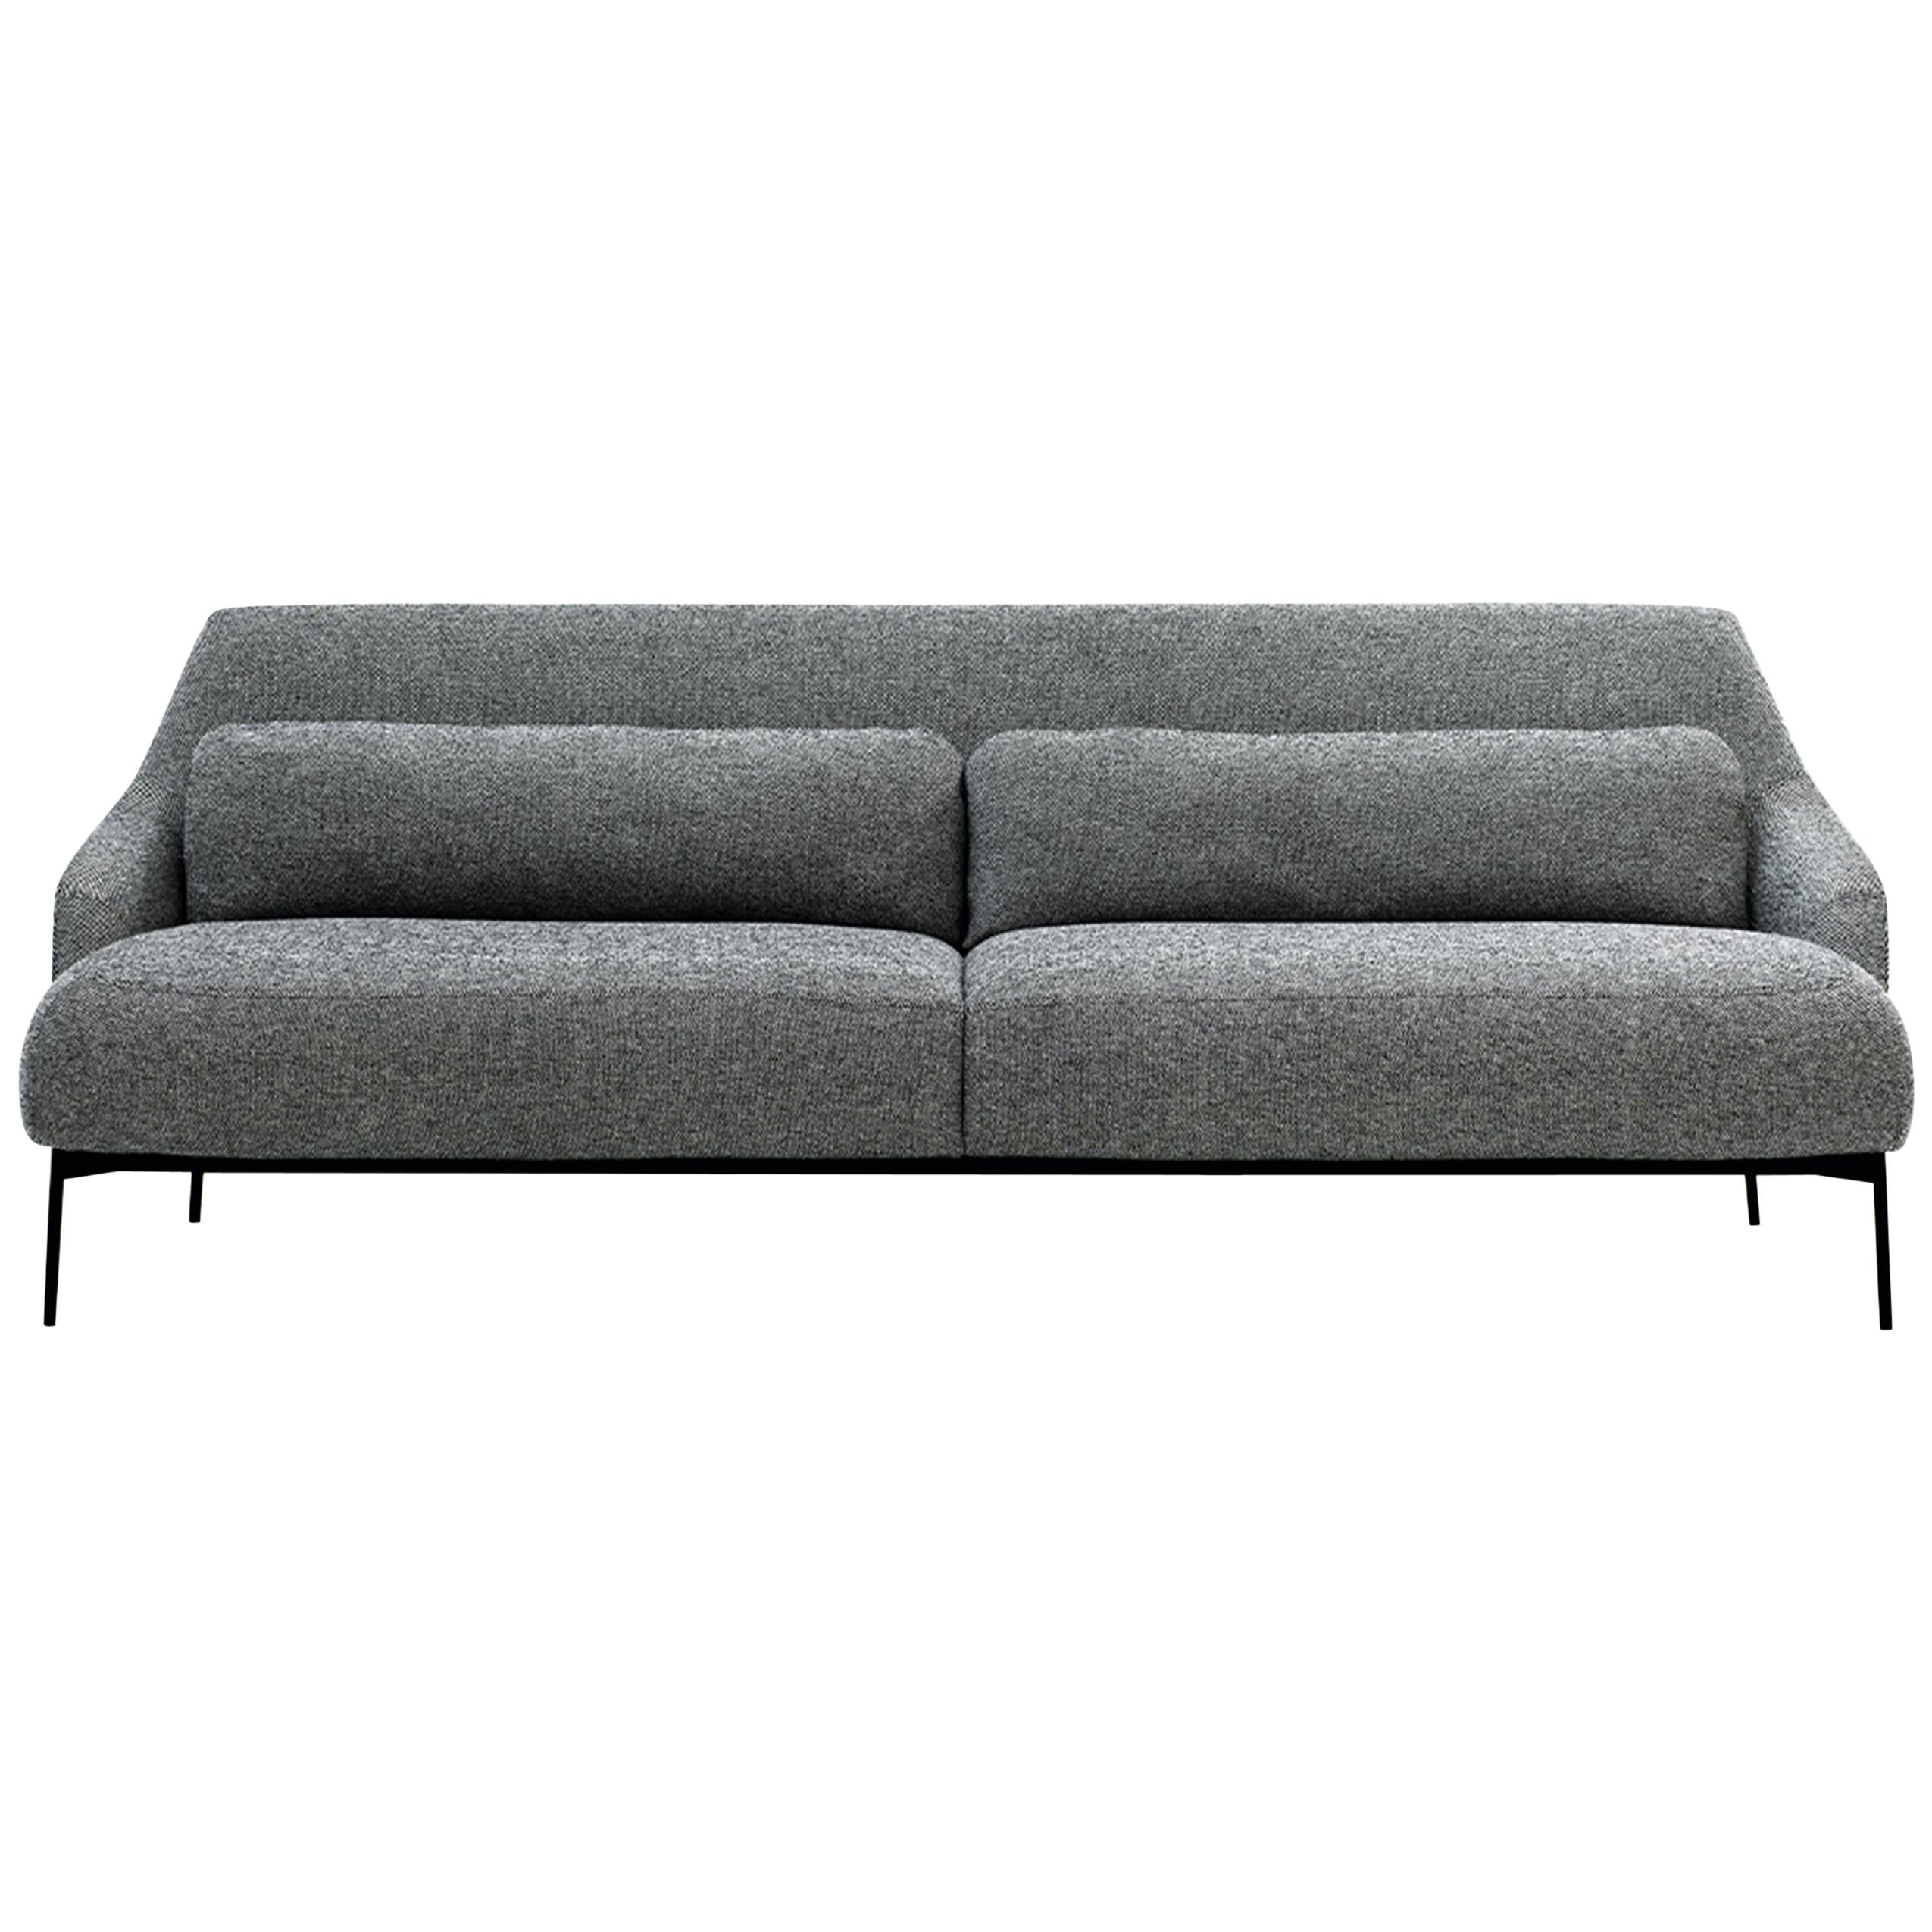 Customizable Tacchini Lima Sofa Designed by Claesson Koivisto Rune For Sale